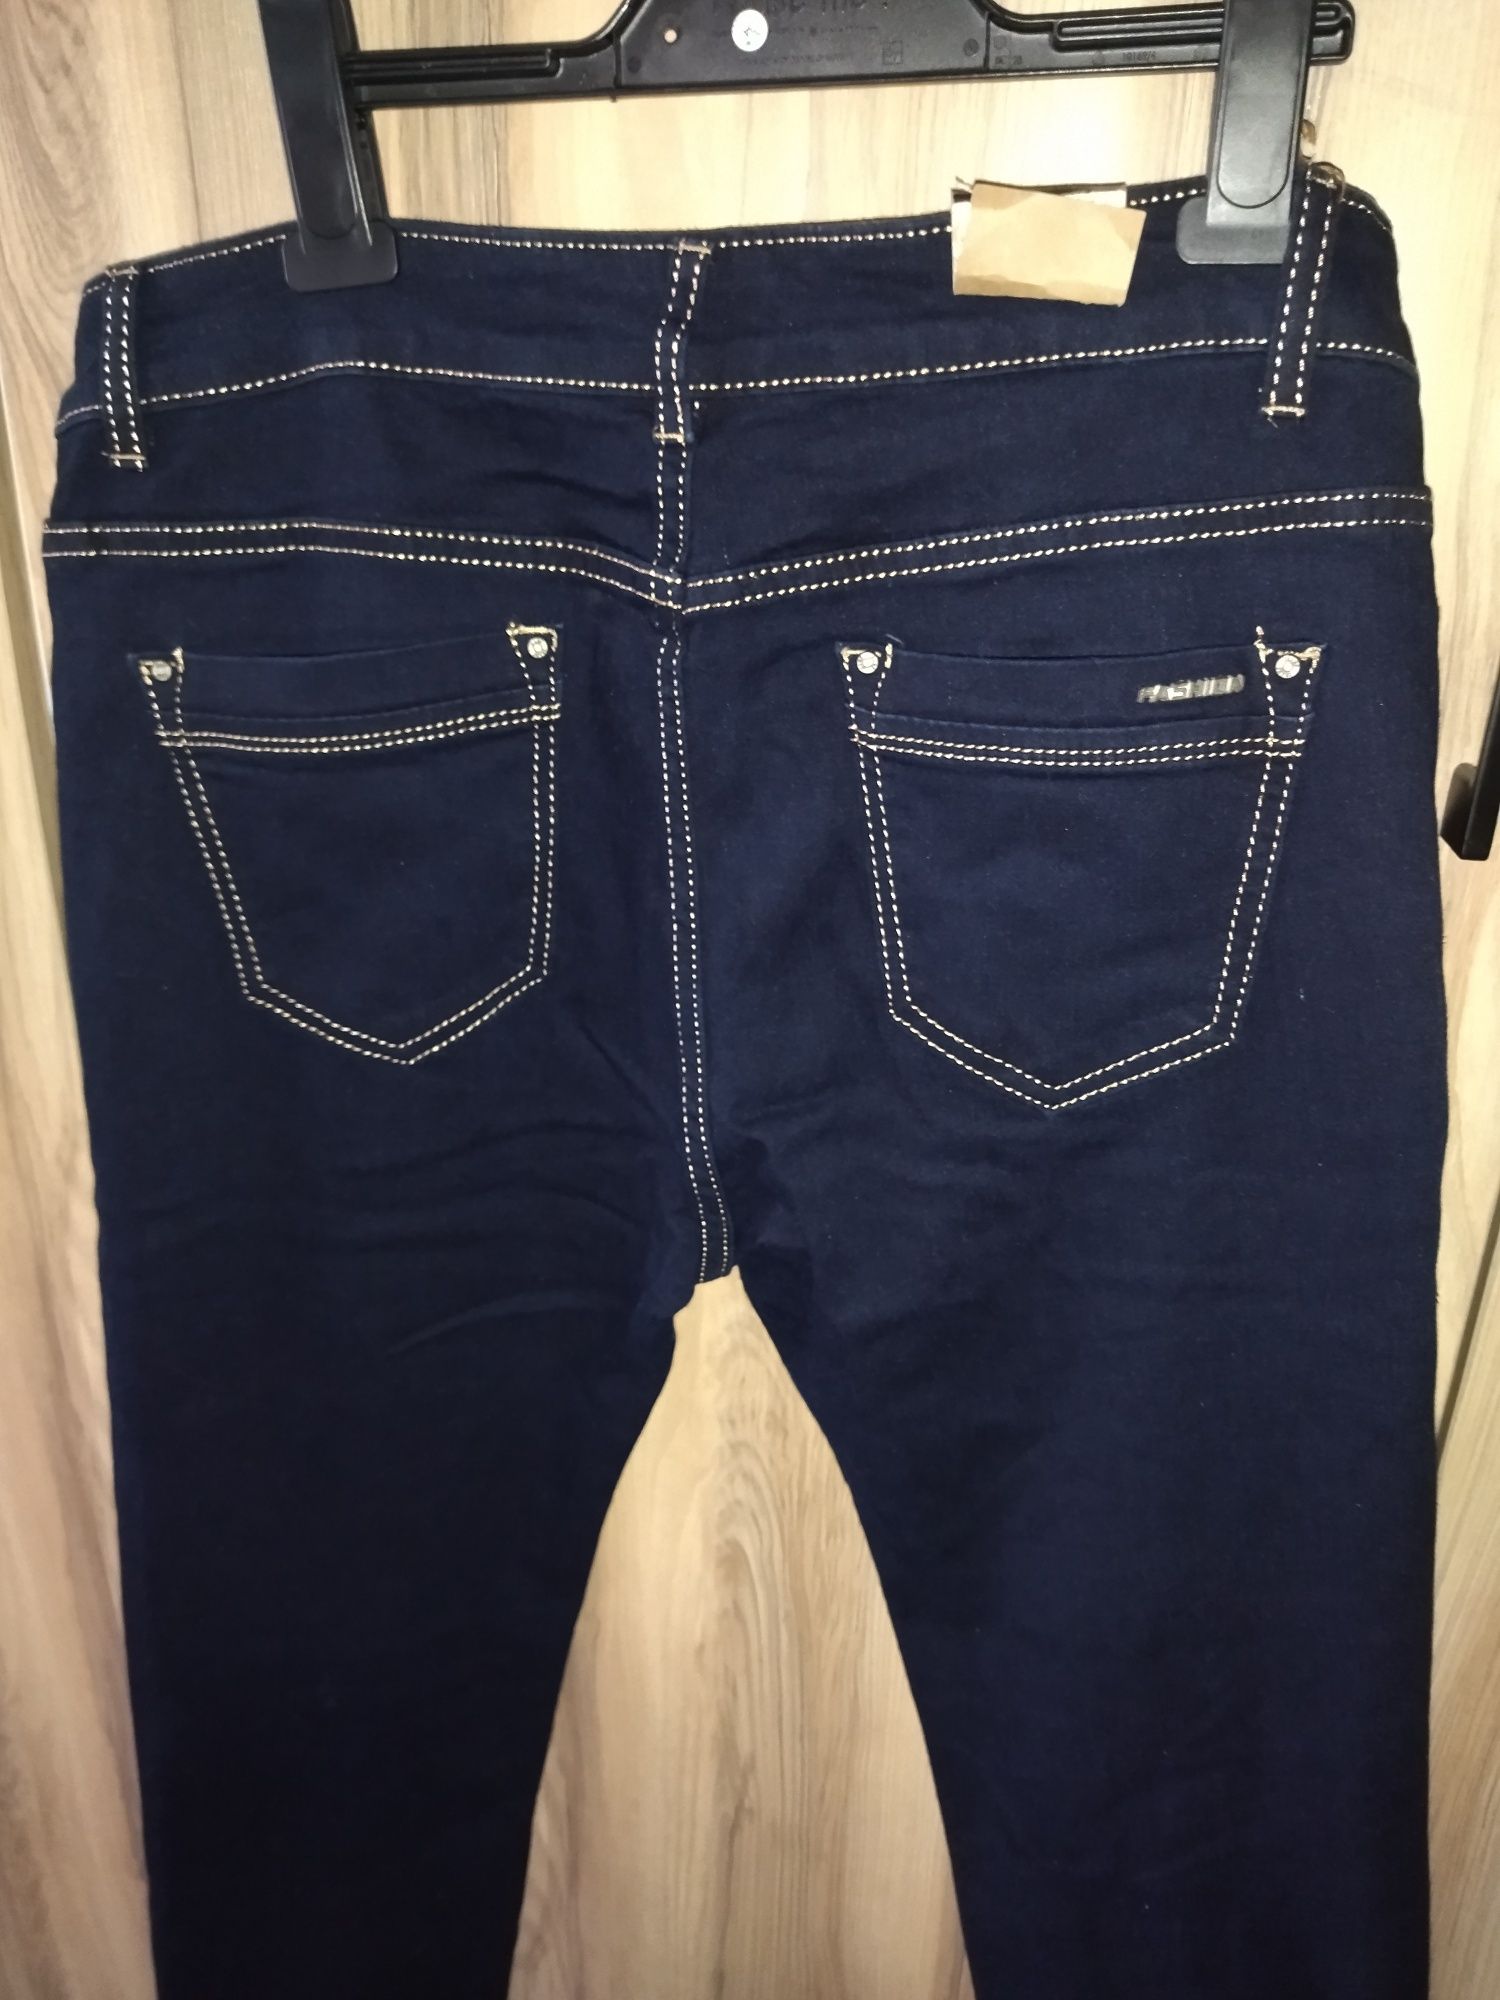 Spodnie Jeans granatowe 44 XXL nowe ciemne